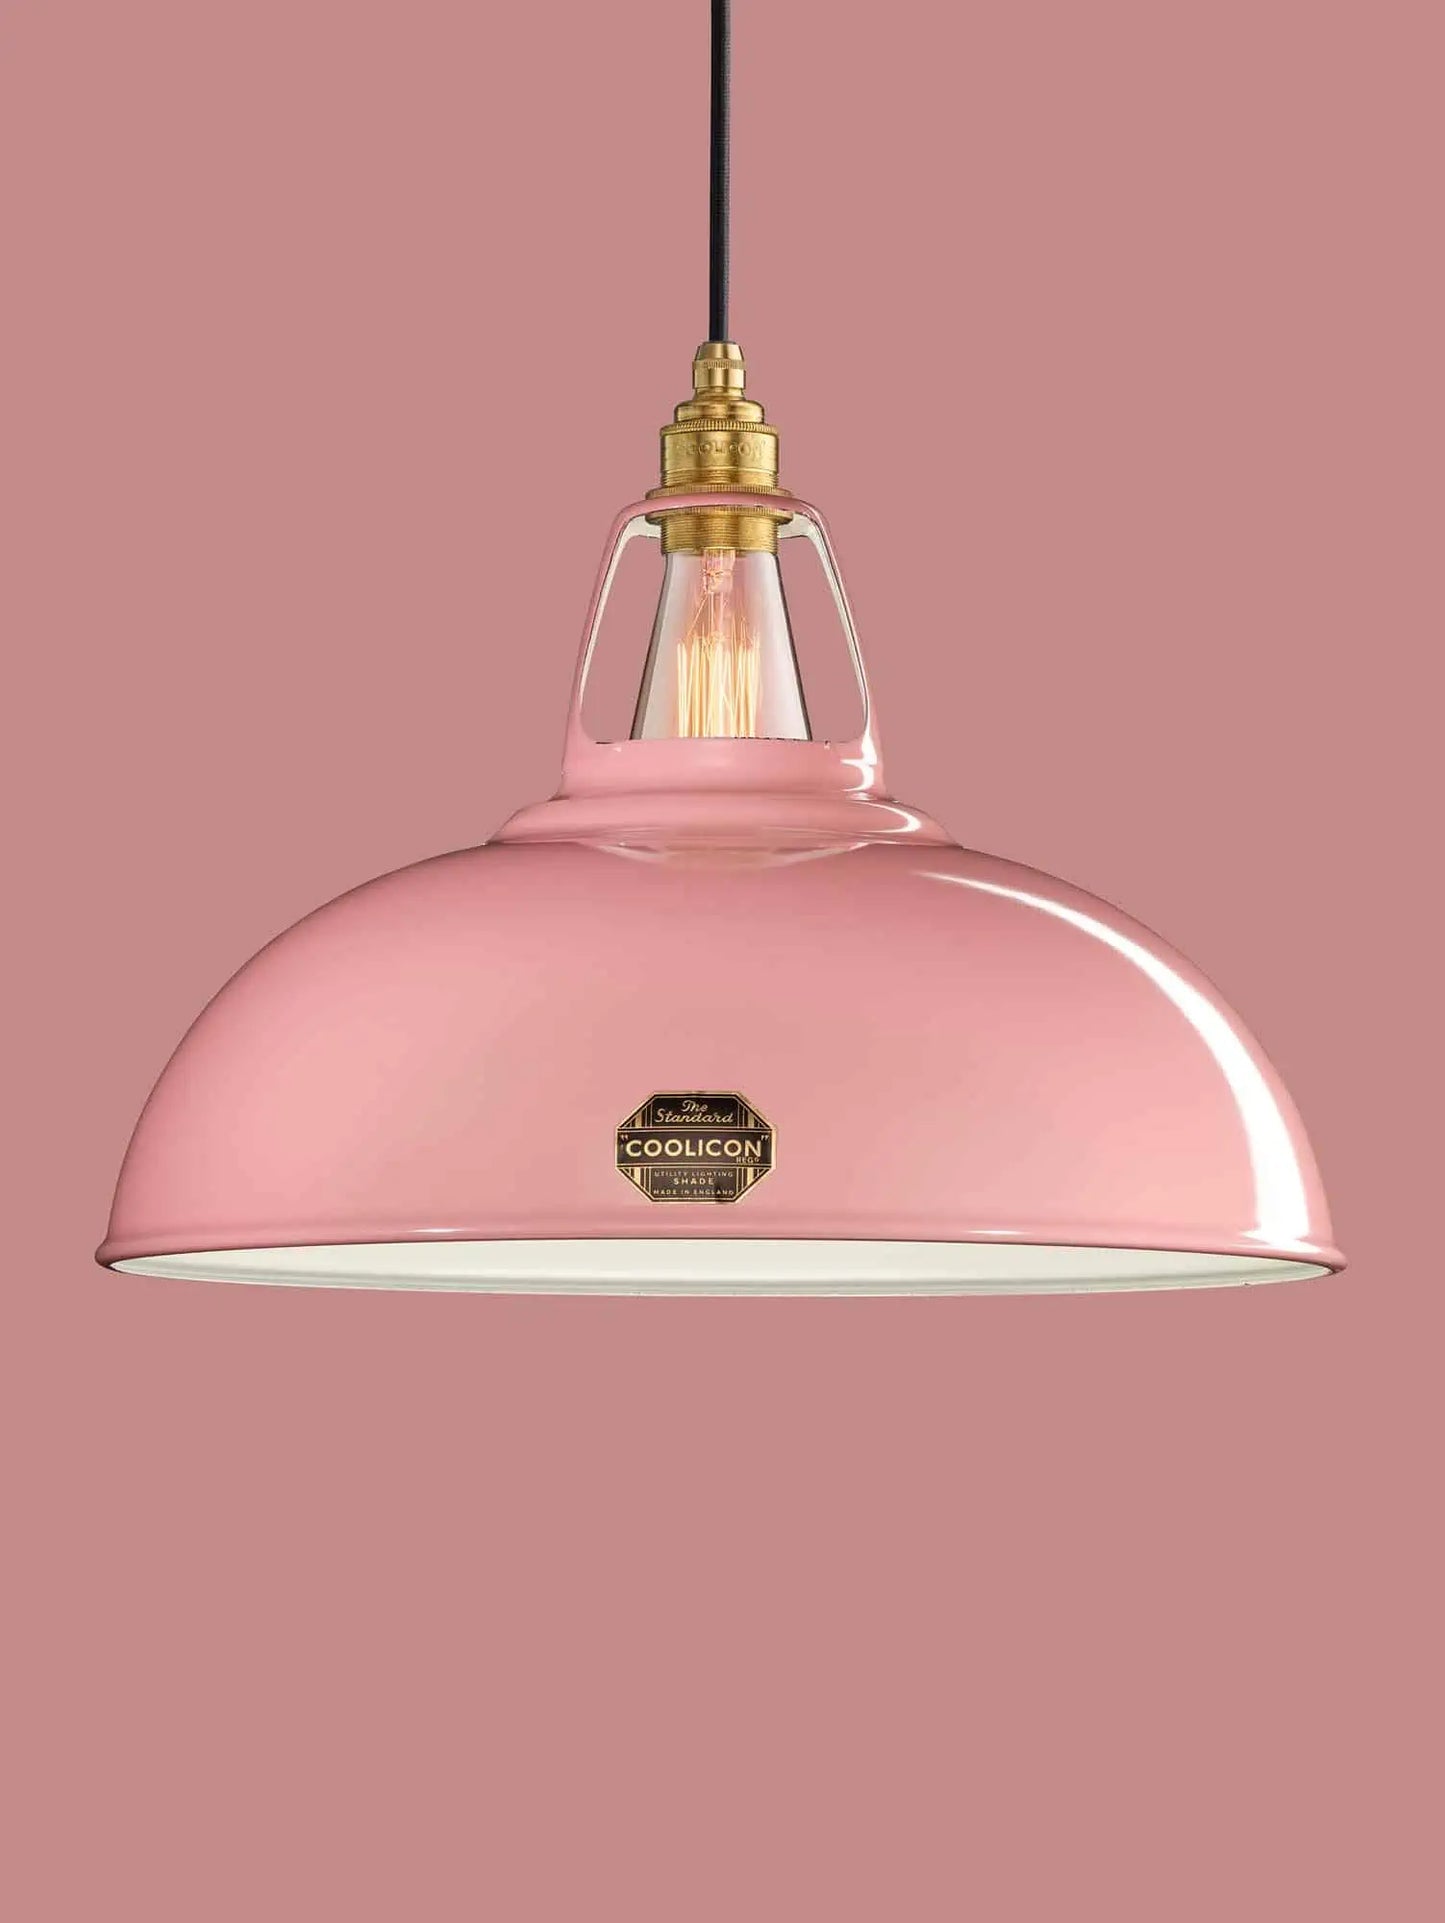 Coolicon Classic lampen - Powder Pink - 2 størrelser